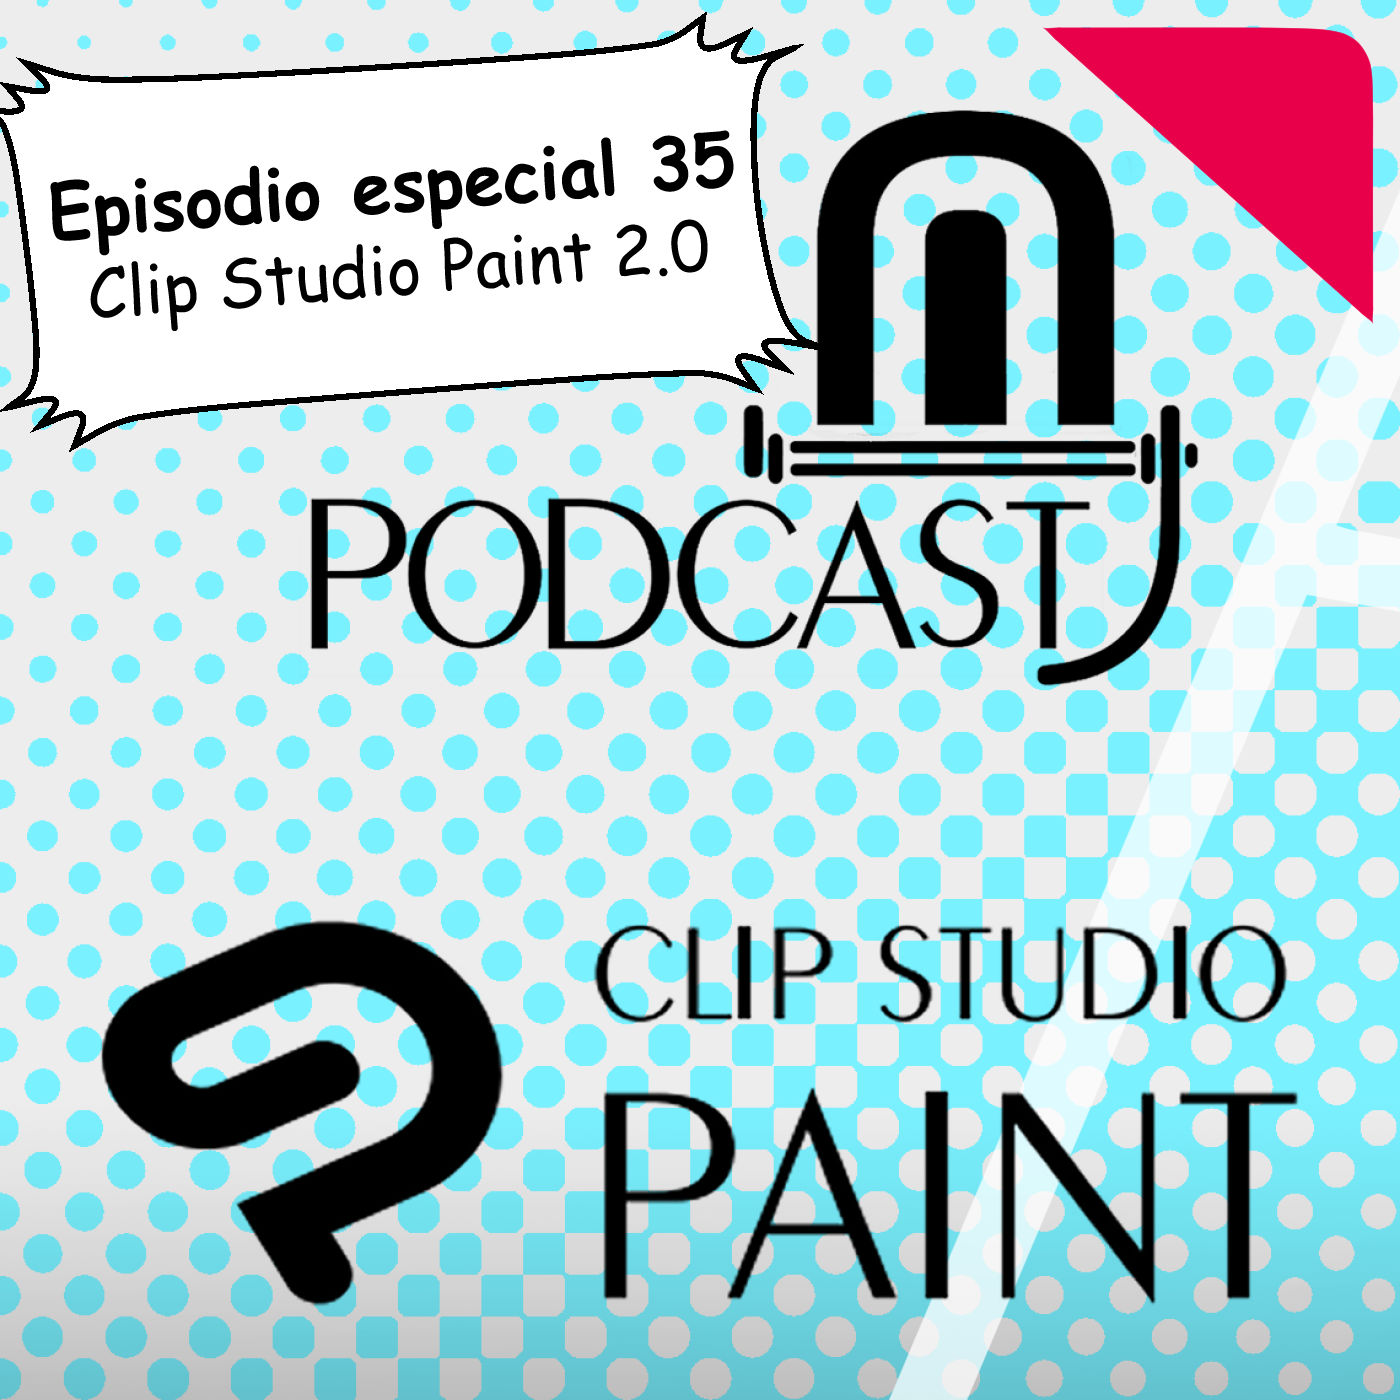 CSP especial 35. Clip Studio Paint 2.0 novedades, características y ofertas de lanzamiento